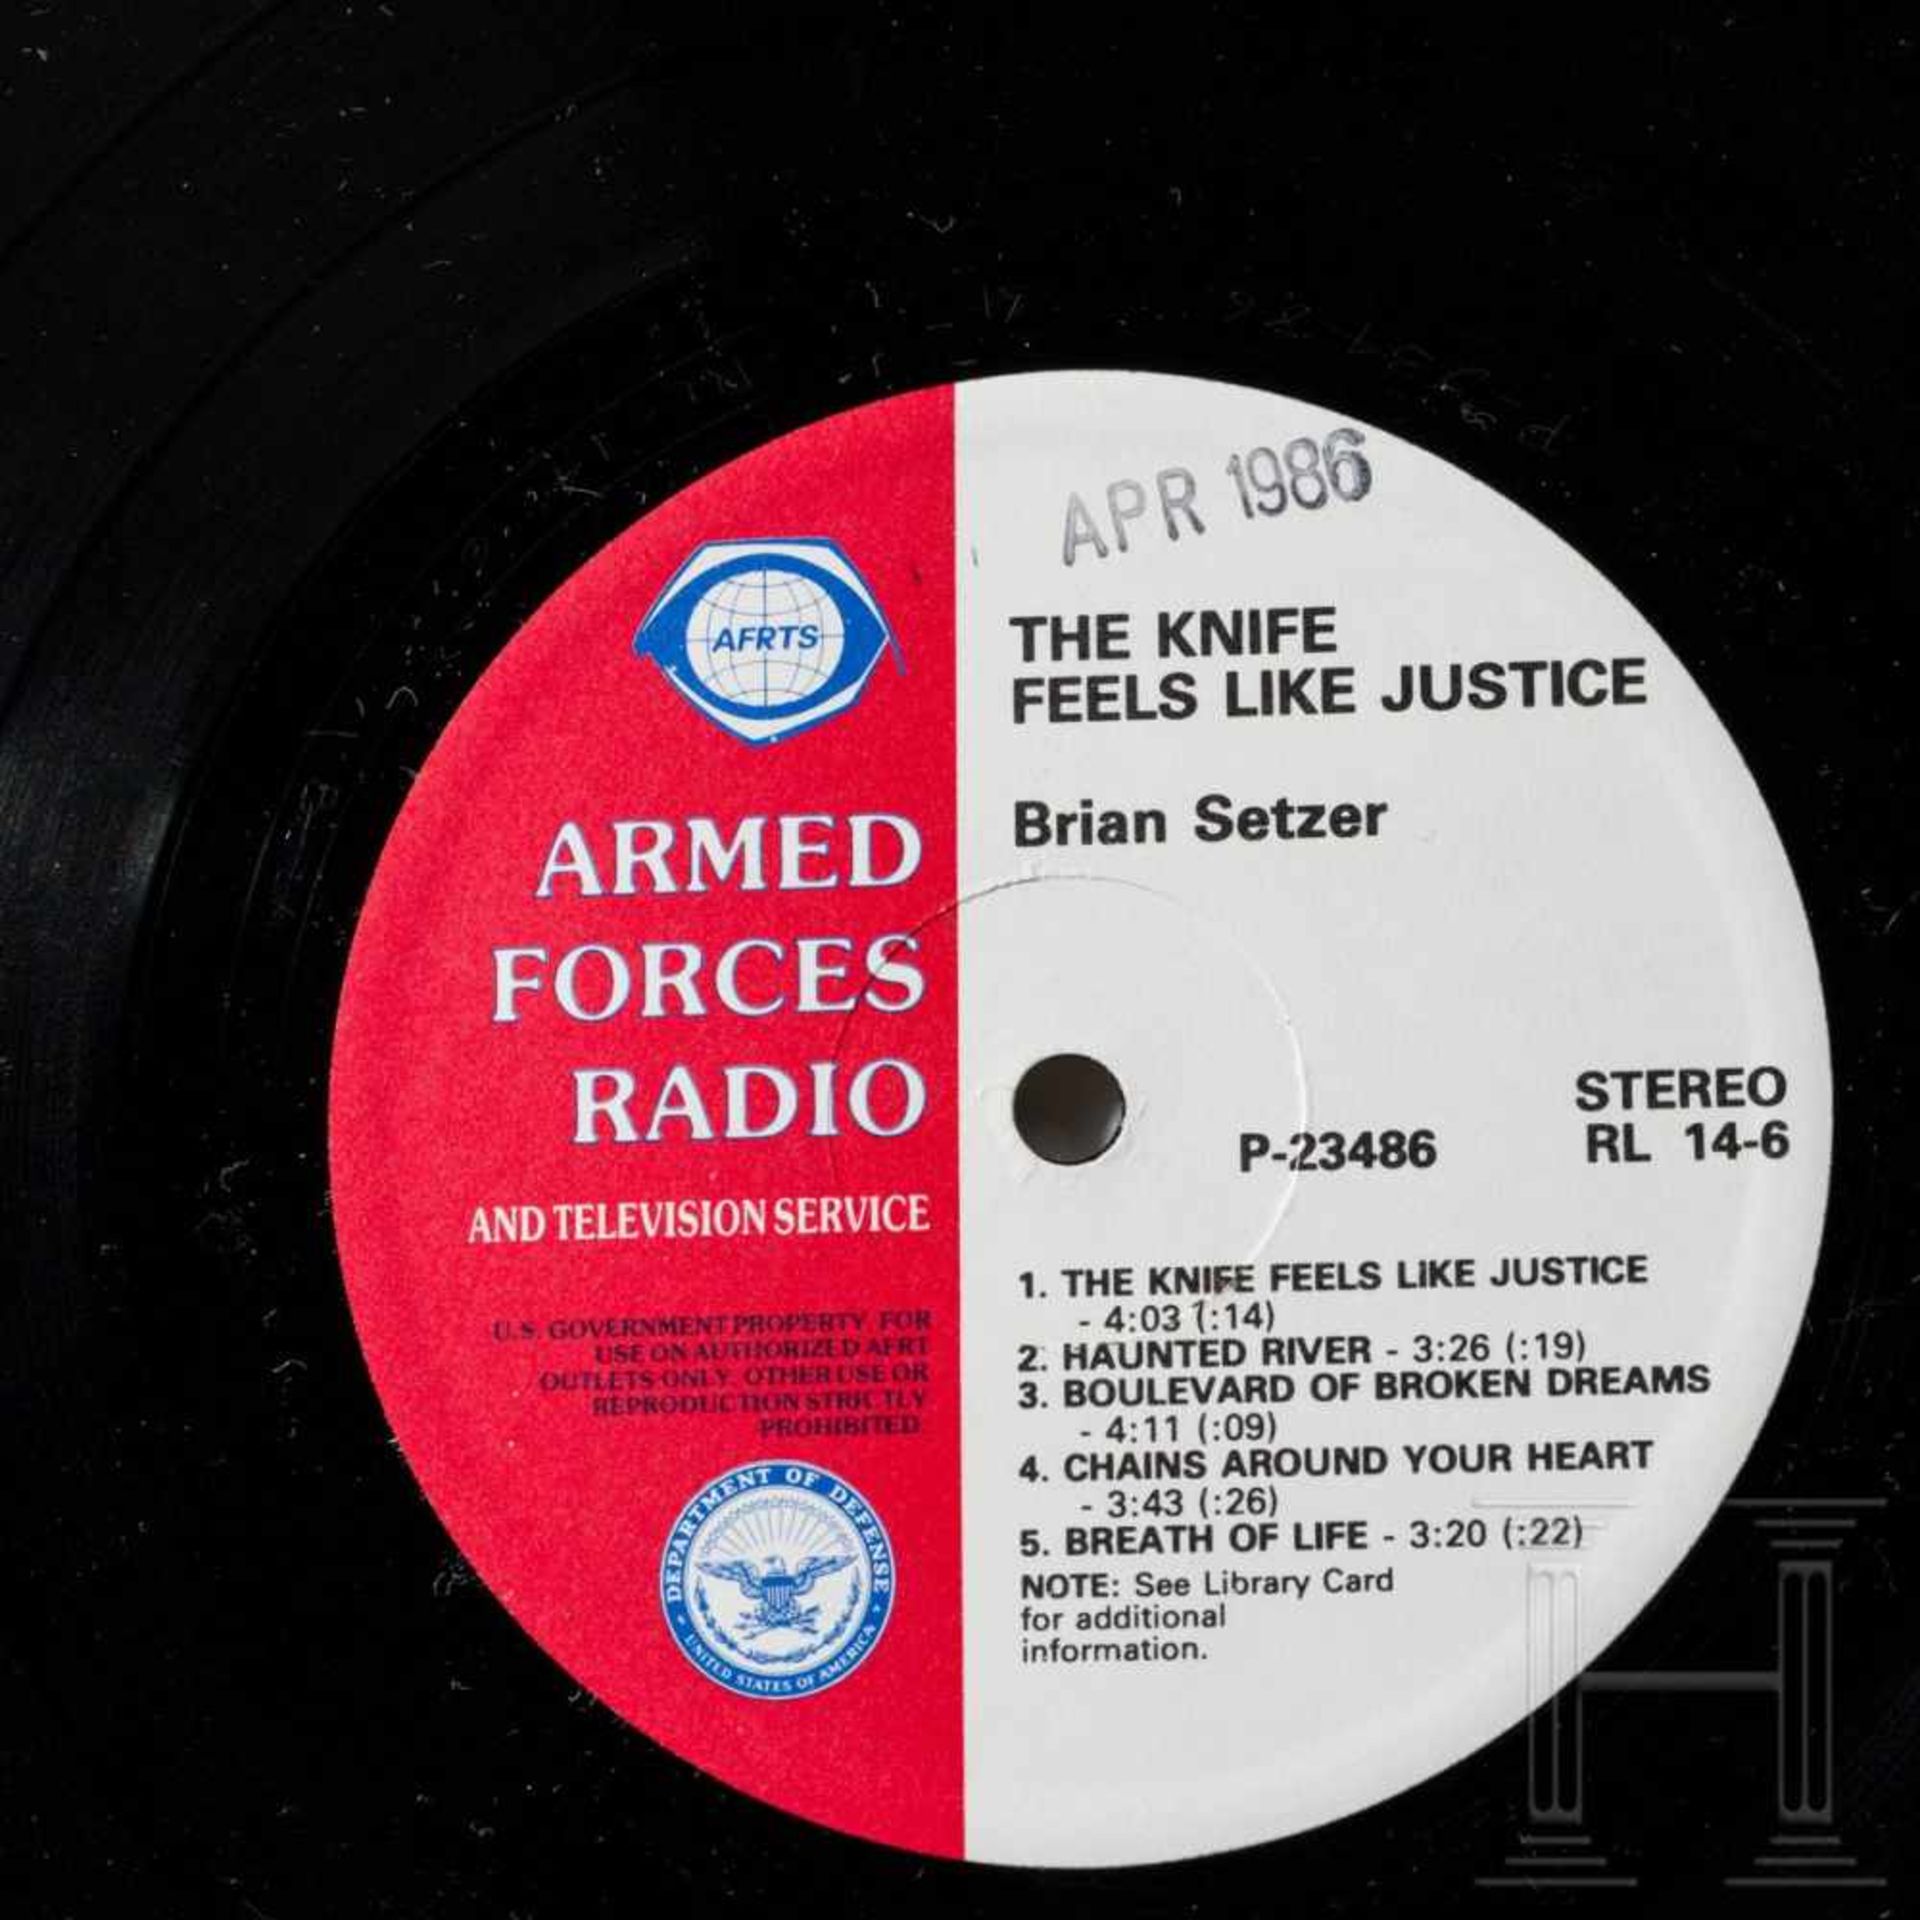 Neun Schallplatten der AFRTS (Armed Forces Radio & Television Service) - Beatles und weitere - Bild 2 aus 10